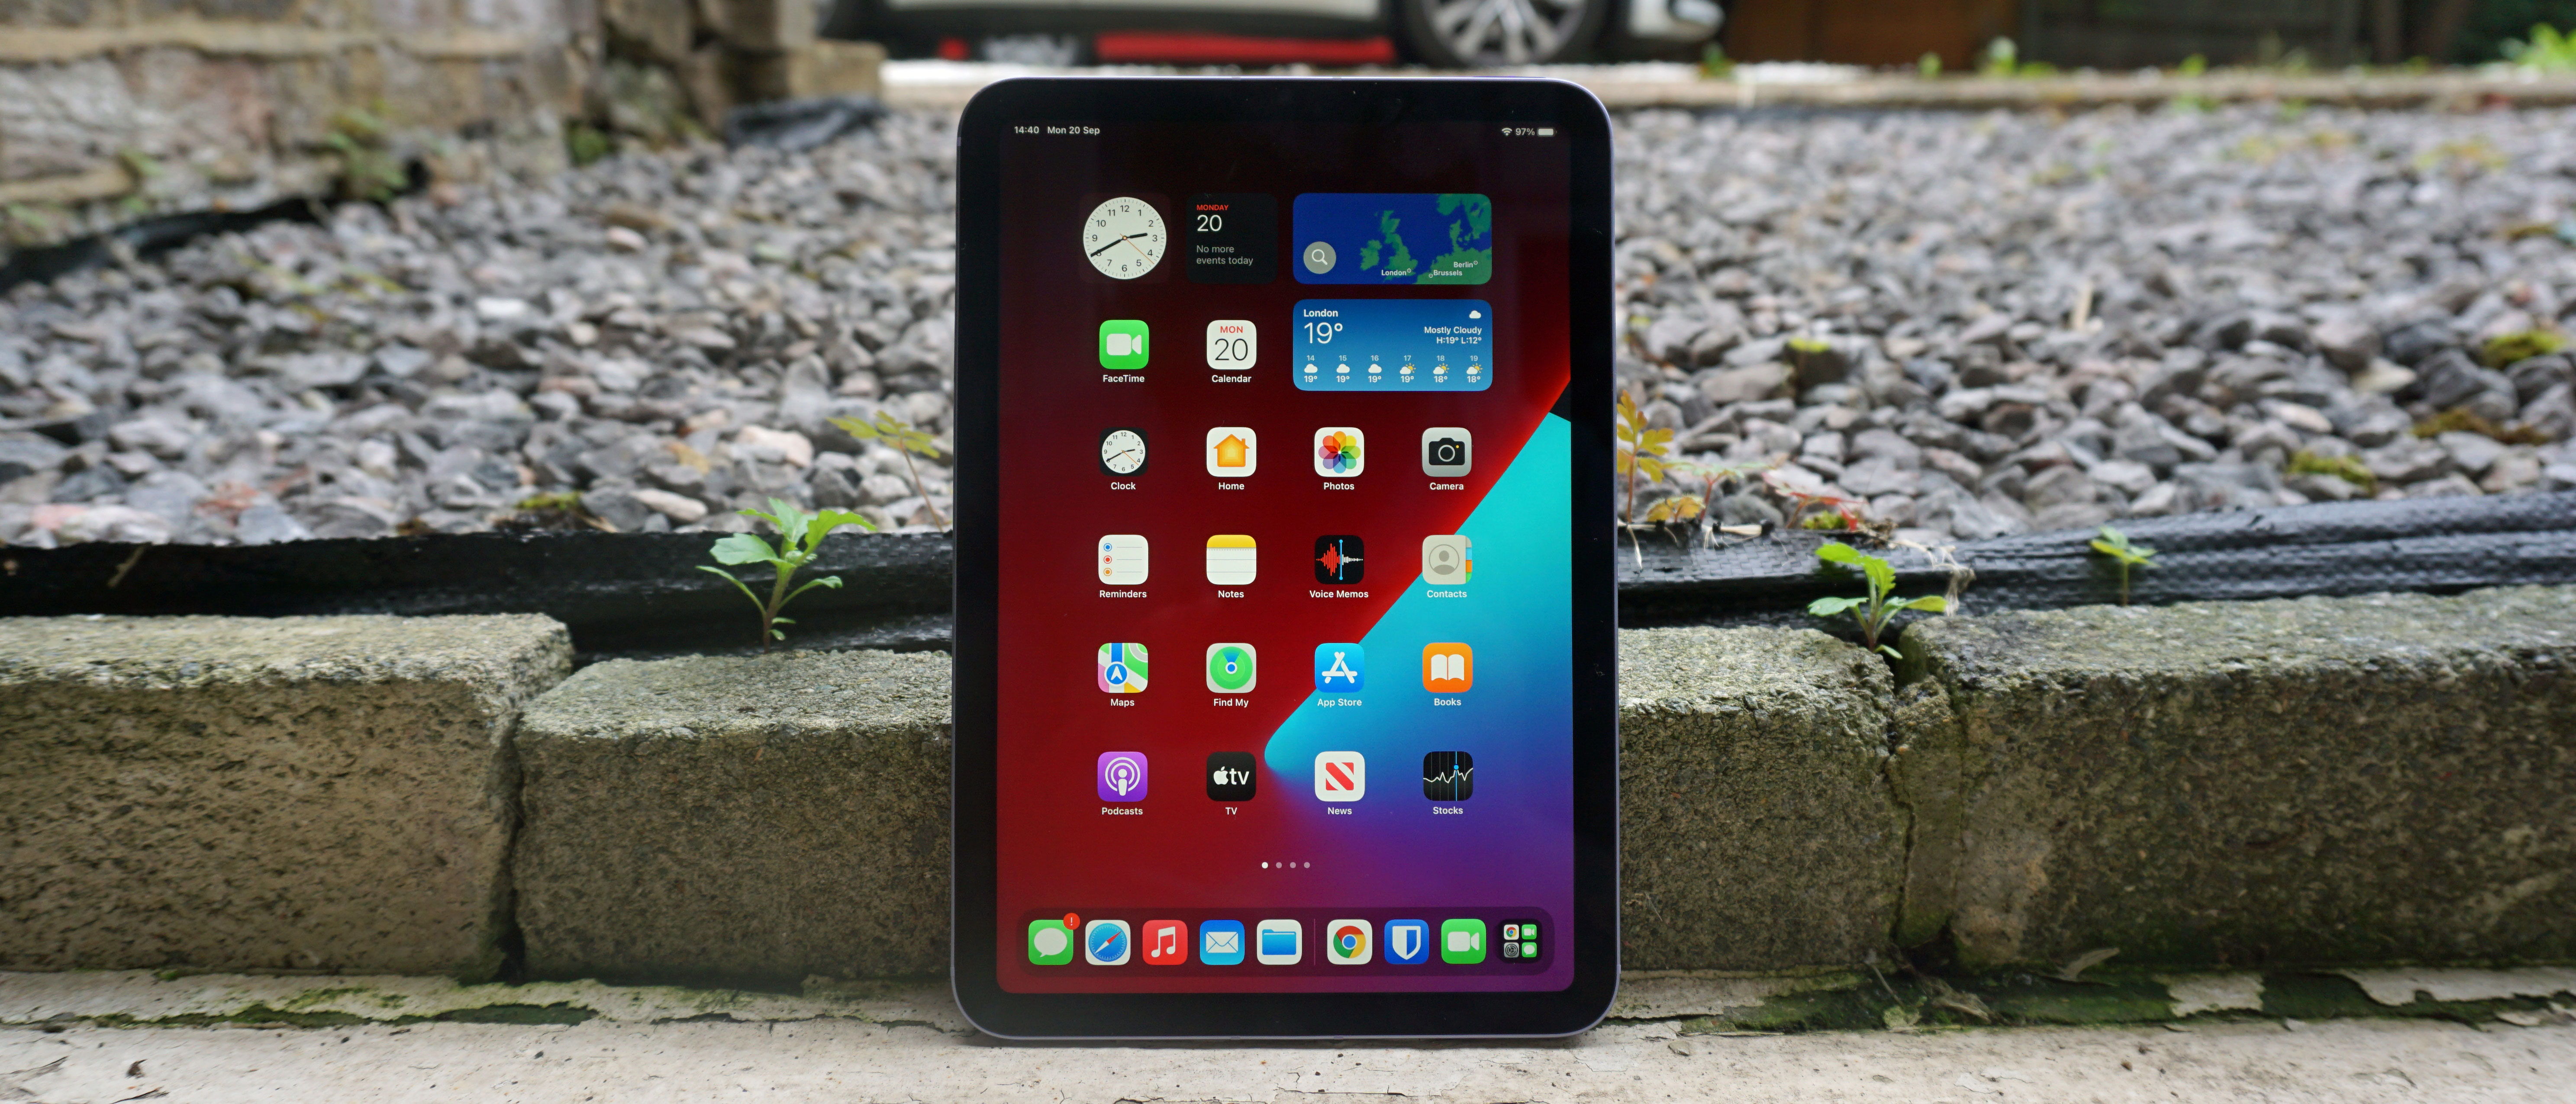 Apple iPad mini review: Best (small) iPad ever